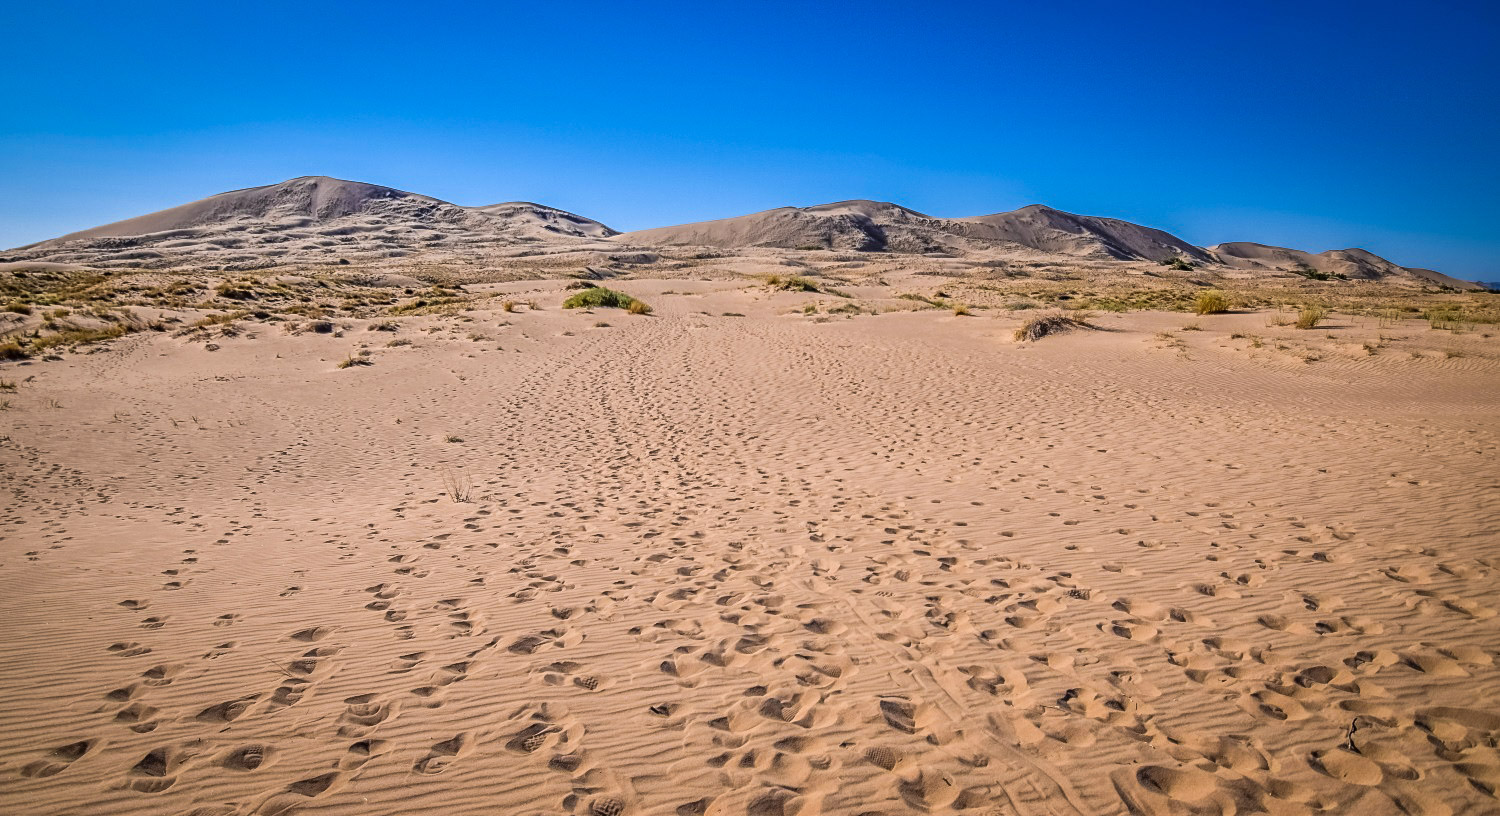 加州最佳沙漠徒步旅行:凯尔索沙丘小径来源:We Who Roam